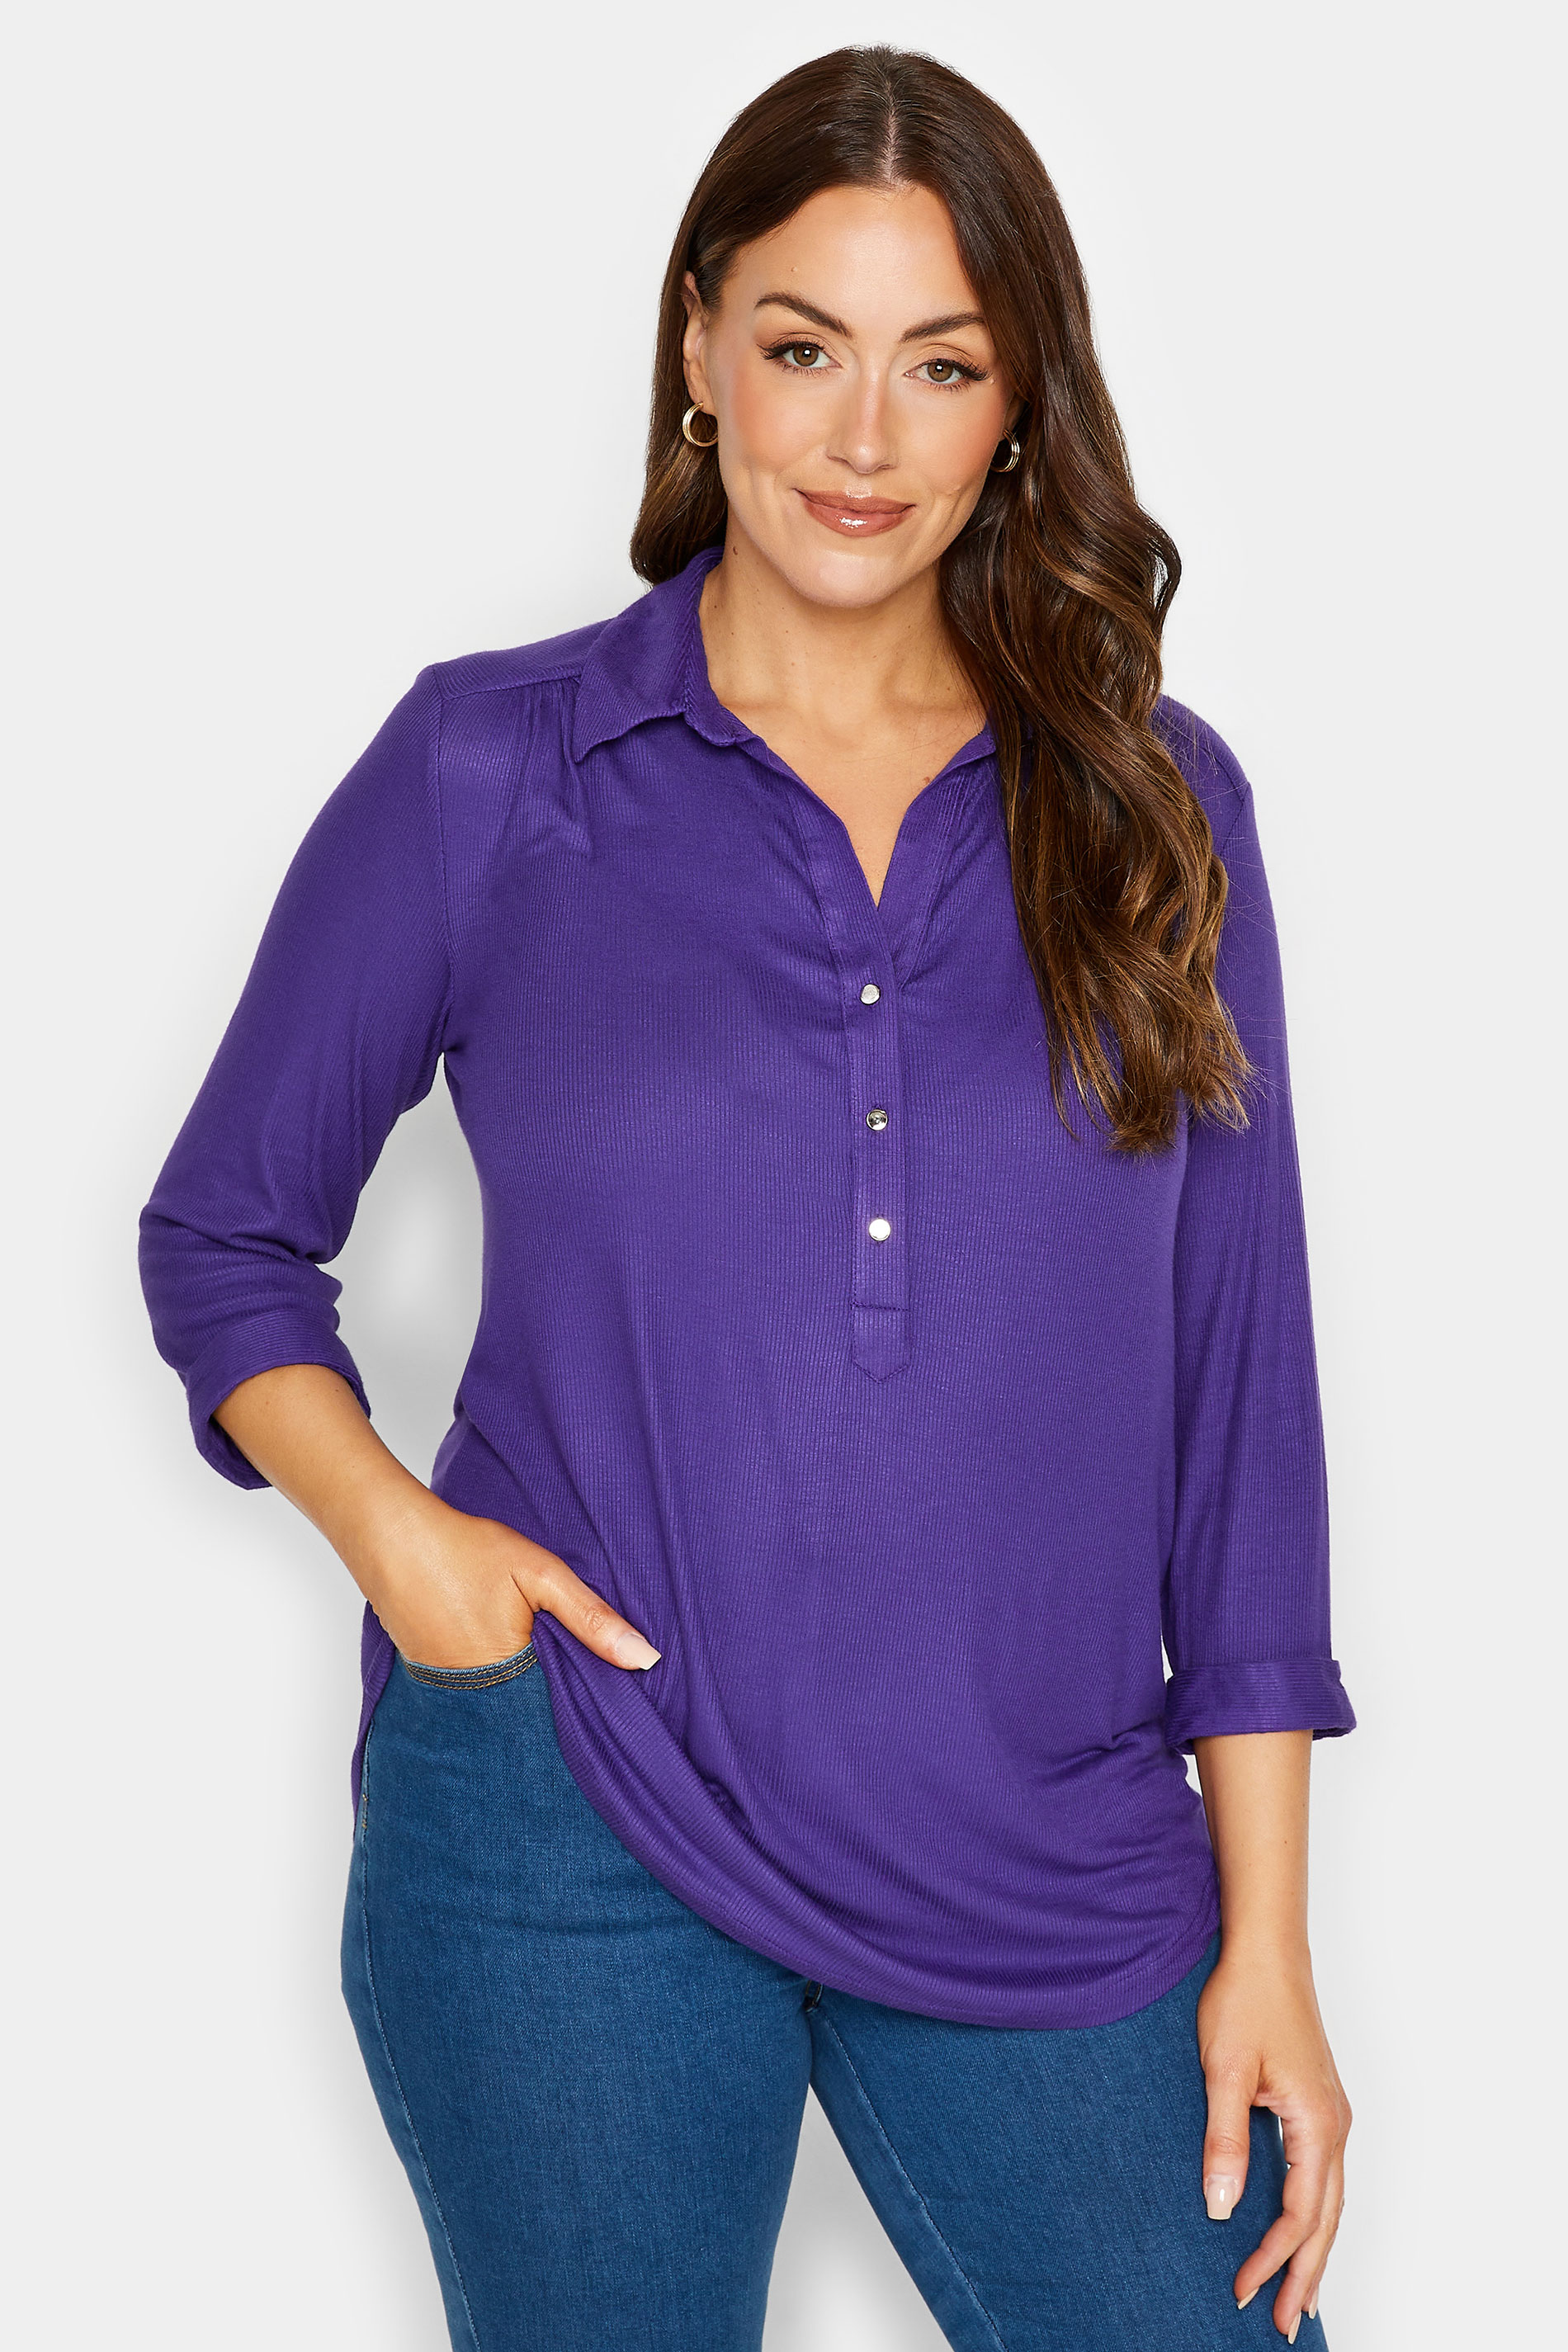 M&Co Purple V-Neck Half Placket Shirt | M&Co 1